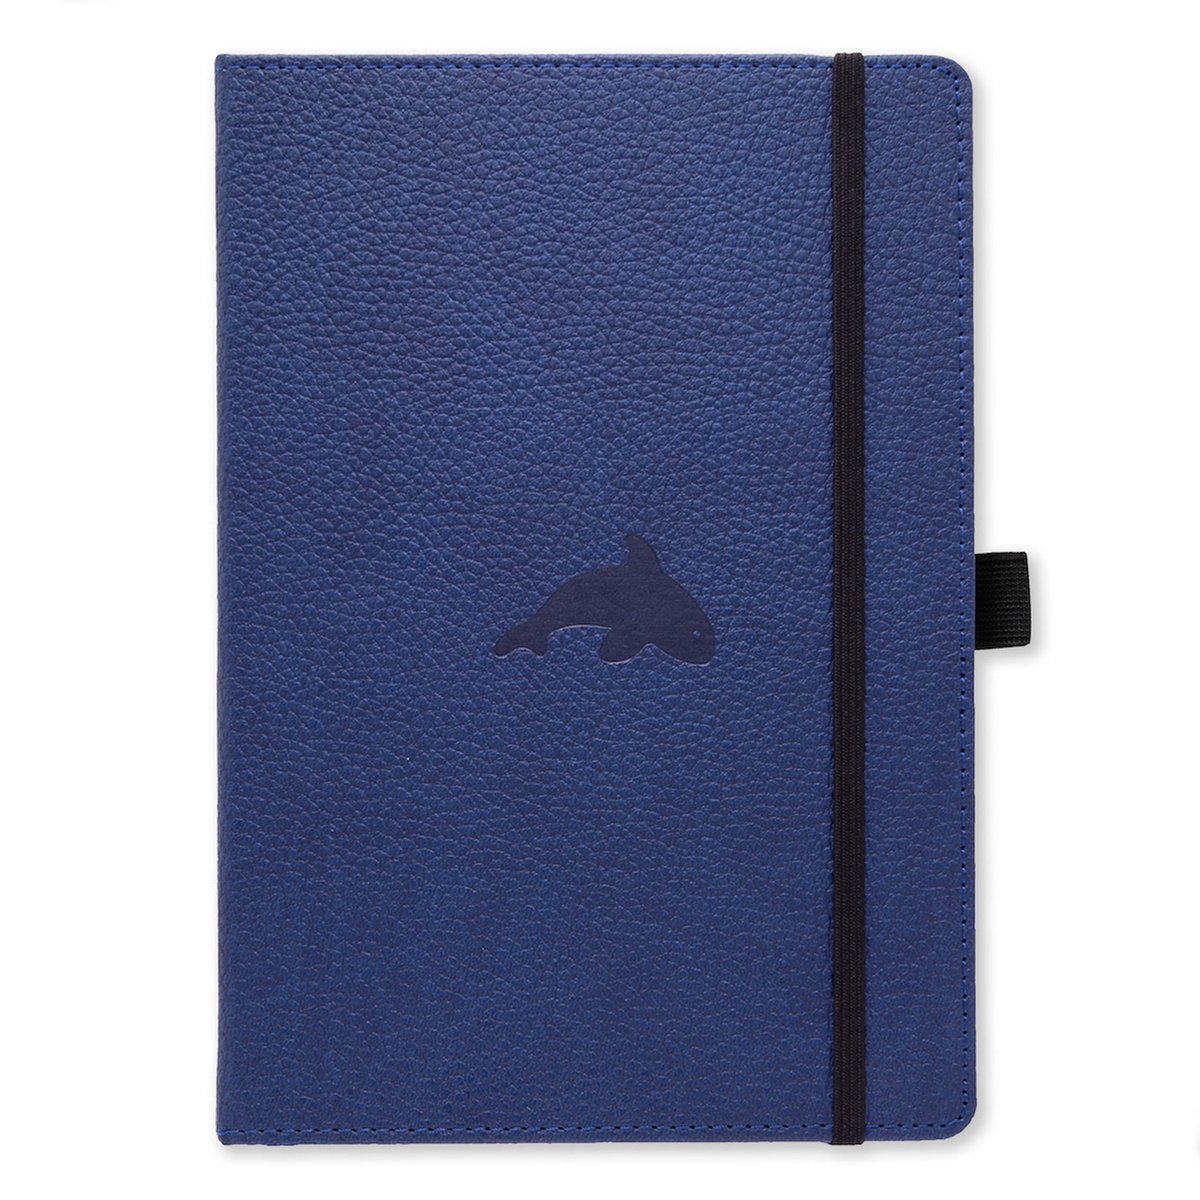 Dingbats* Wildlife A4 Notitieboek - Blue Whale Lijntjes - Bullet Journal met 100 gsm Inktvrij Papier - Schetsboek met Harde Kaft, Elastische Sluiting en Bladwijzer